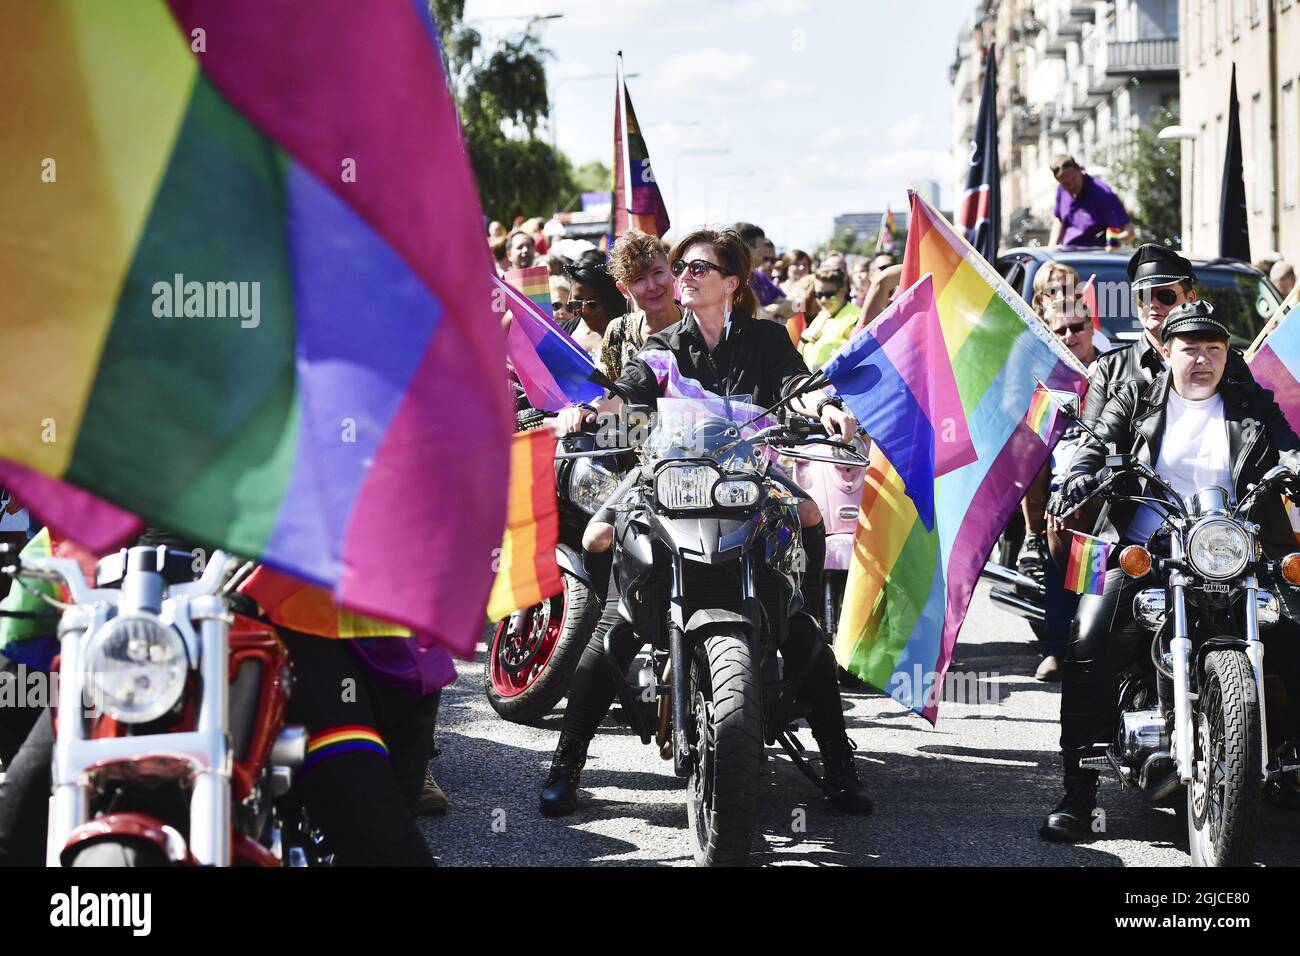 Les motocyclistes féminins « Dykes on Bikes » participent à la parade annuelle Stockholm Pride à Stockholm, en Suède, le 03 août 2019. Environ 50,000 participants sont descendus dans les rues au cours du défilé de cette année. Photo: Stina Stjernkvist / TT / Kod 11610 Banque D'Images